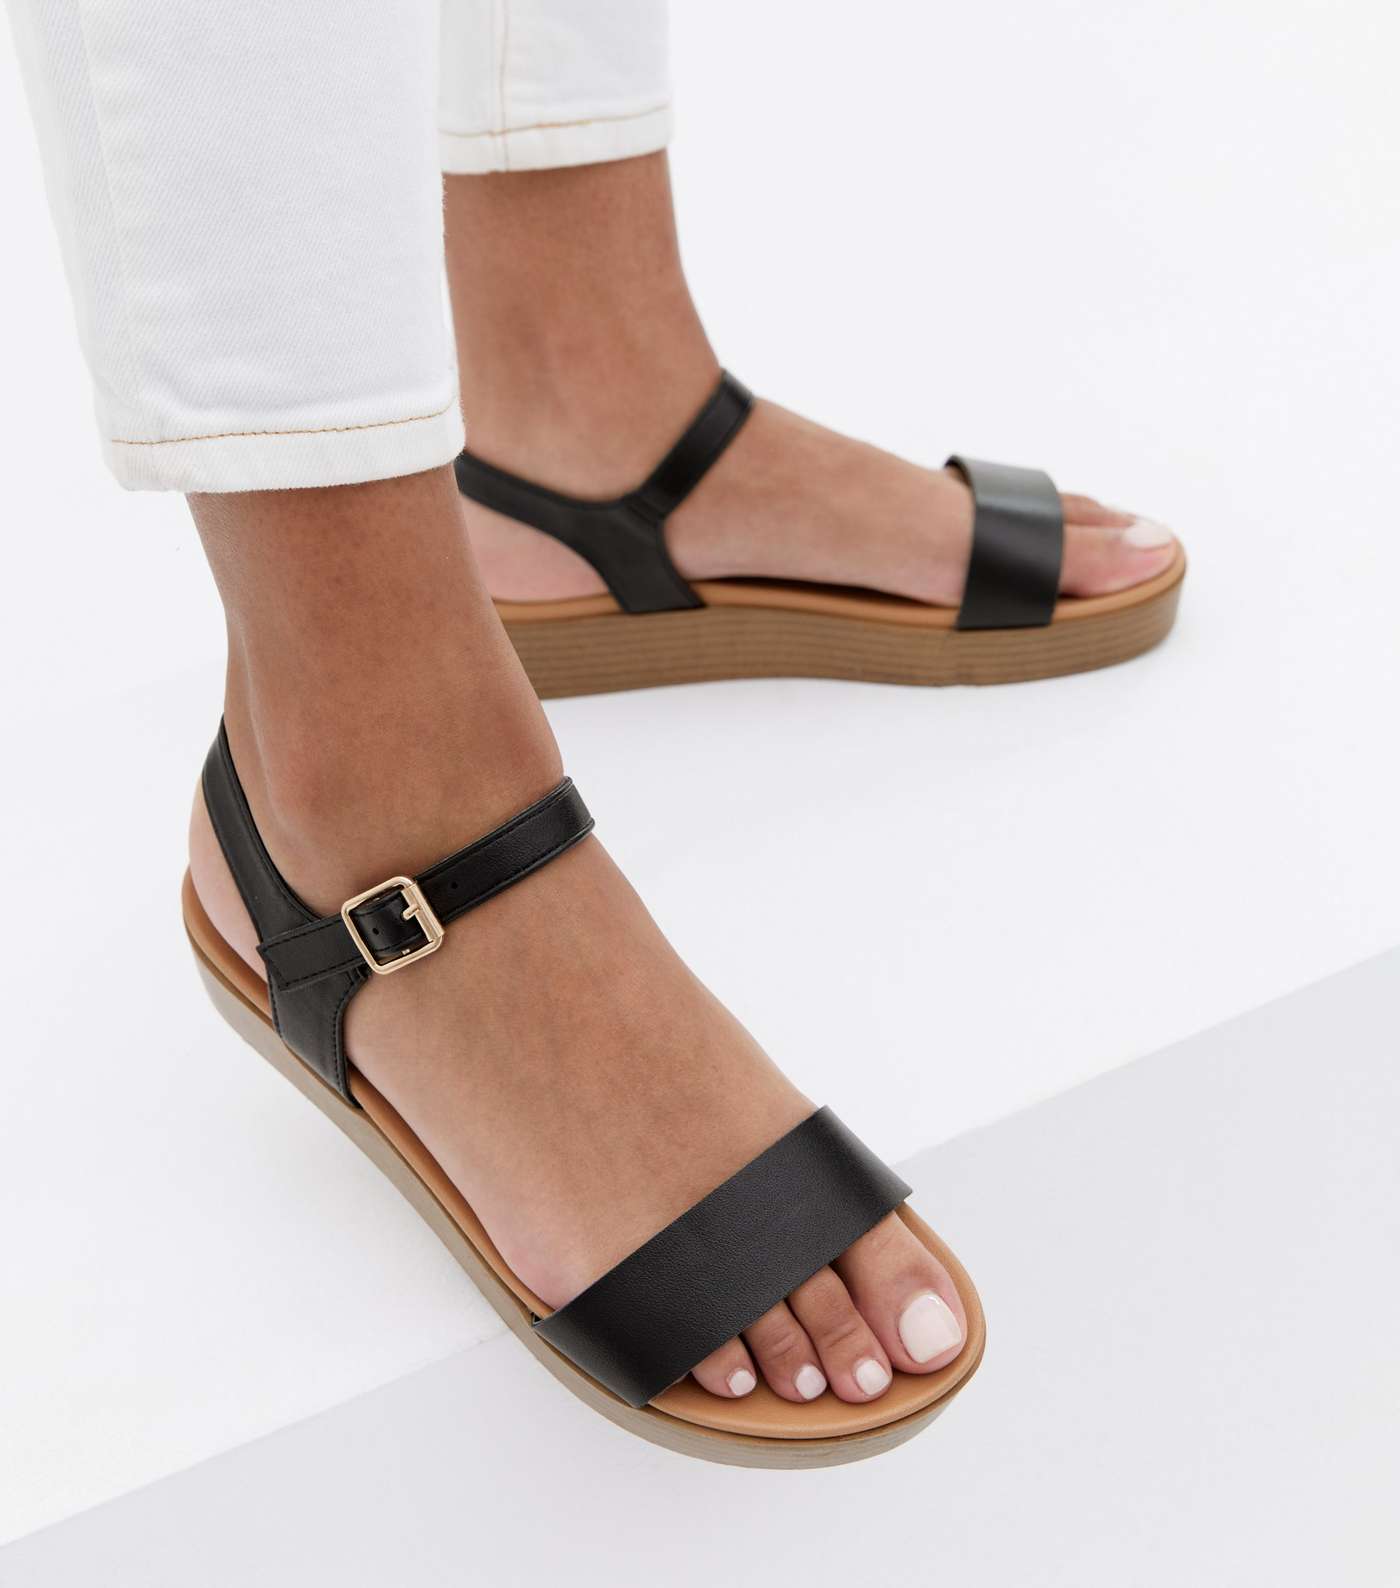 Black Leather-Look 2 Part Flatform Sandals Image 2